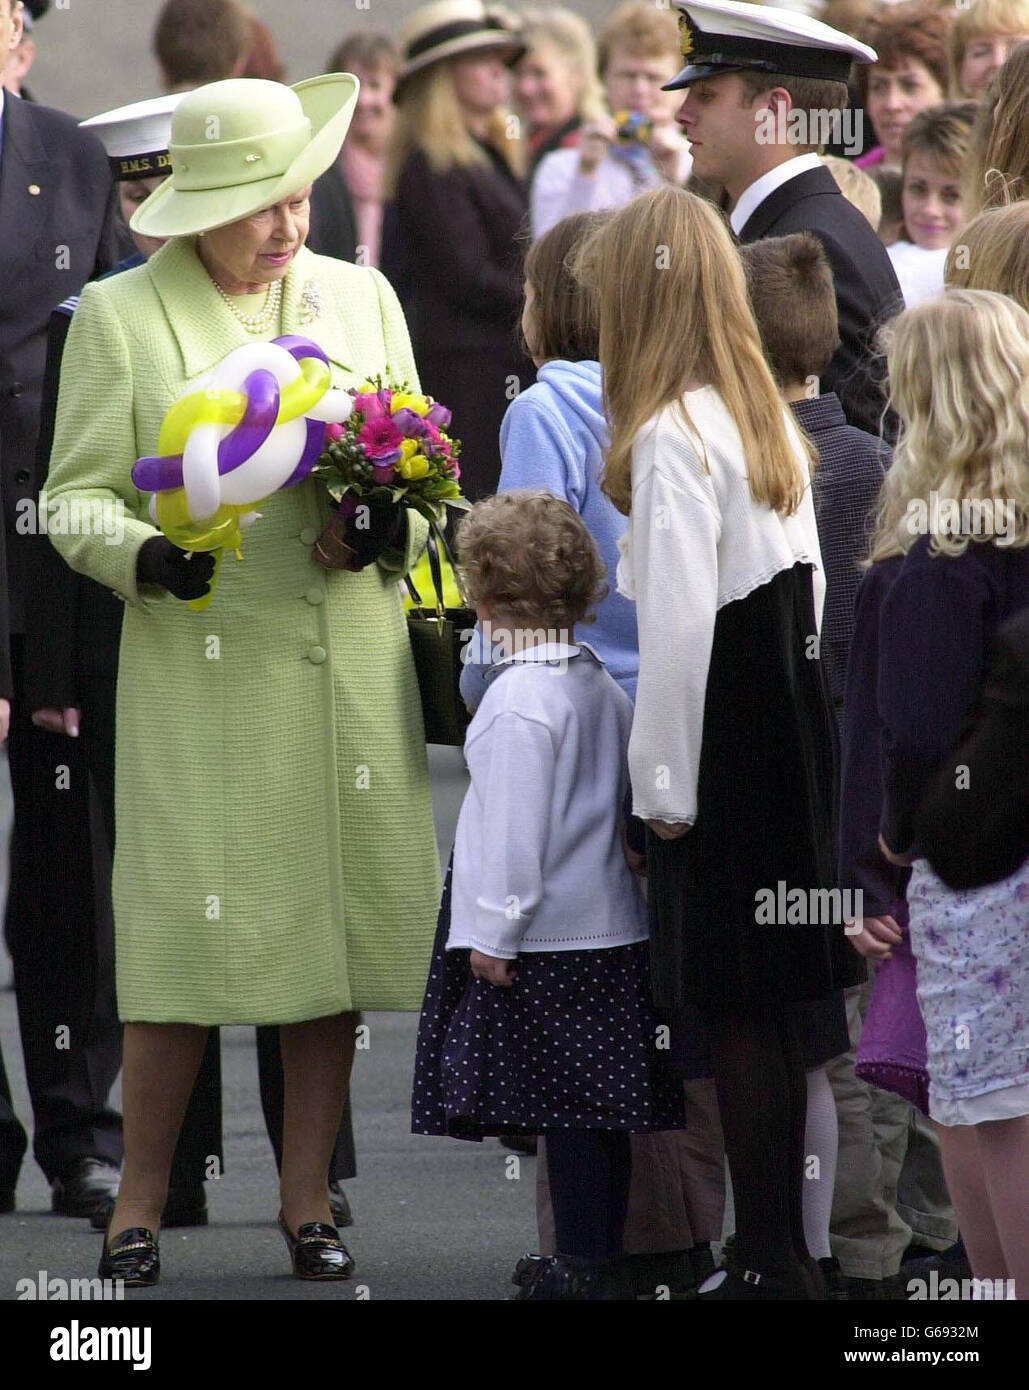 La reine Elizabeth II de Grande-Bretagne reçoit des fleurs et des ballons lors de sa visite à la base navale de Devonport, Plymouth. La Reine a rencontré des familles de ceux qui servaient dans le golfe, où elle a bavardé avec des dizaines de femmes, d'enfants, de mères et de pères. * le duc d'Édimbourg, qui est arrivé séparément, a également passé du temps à parler aux familles. Banque D'Images